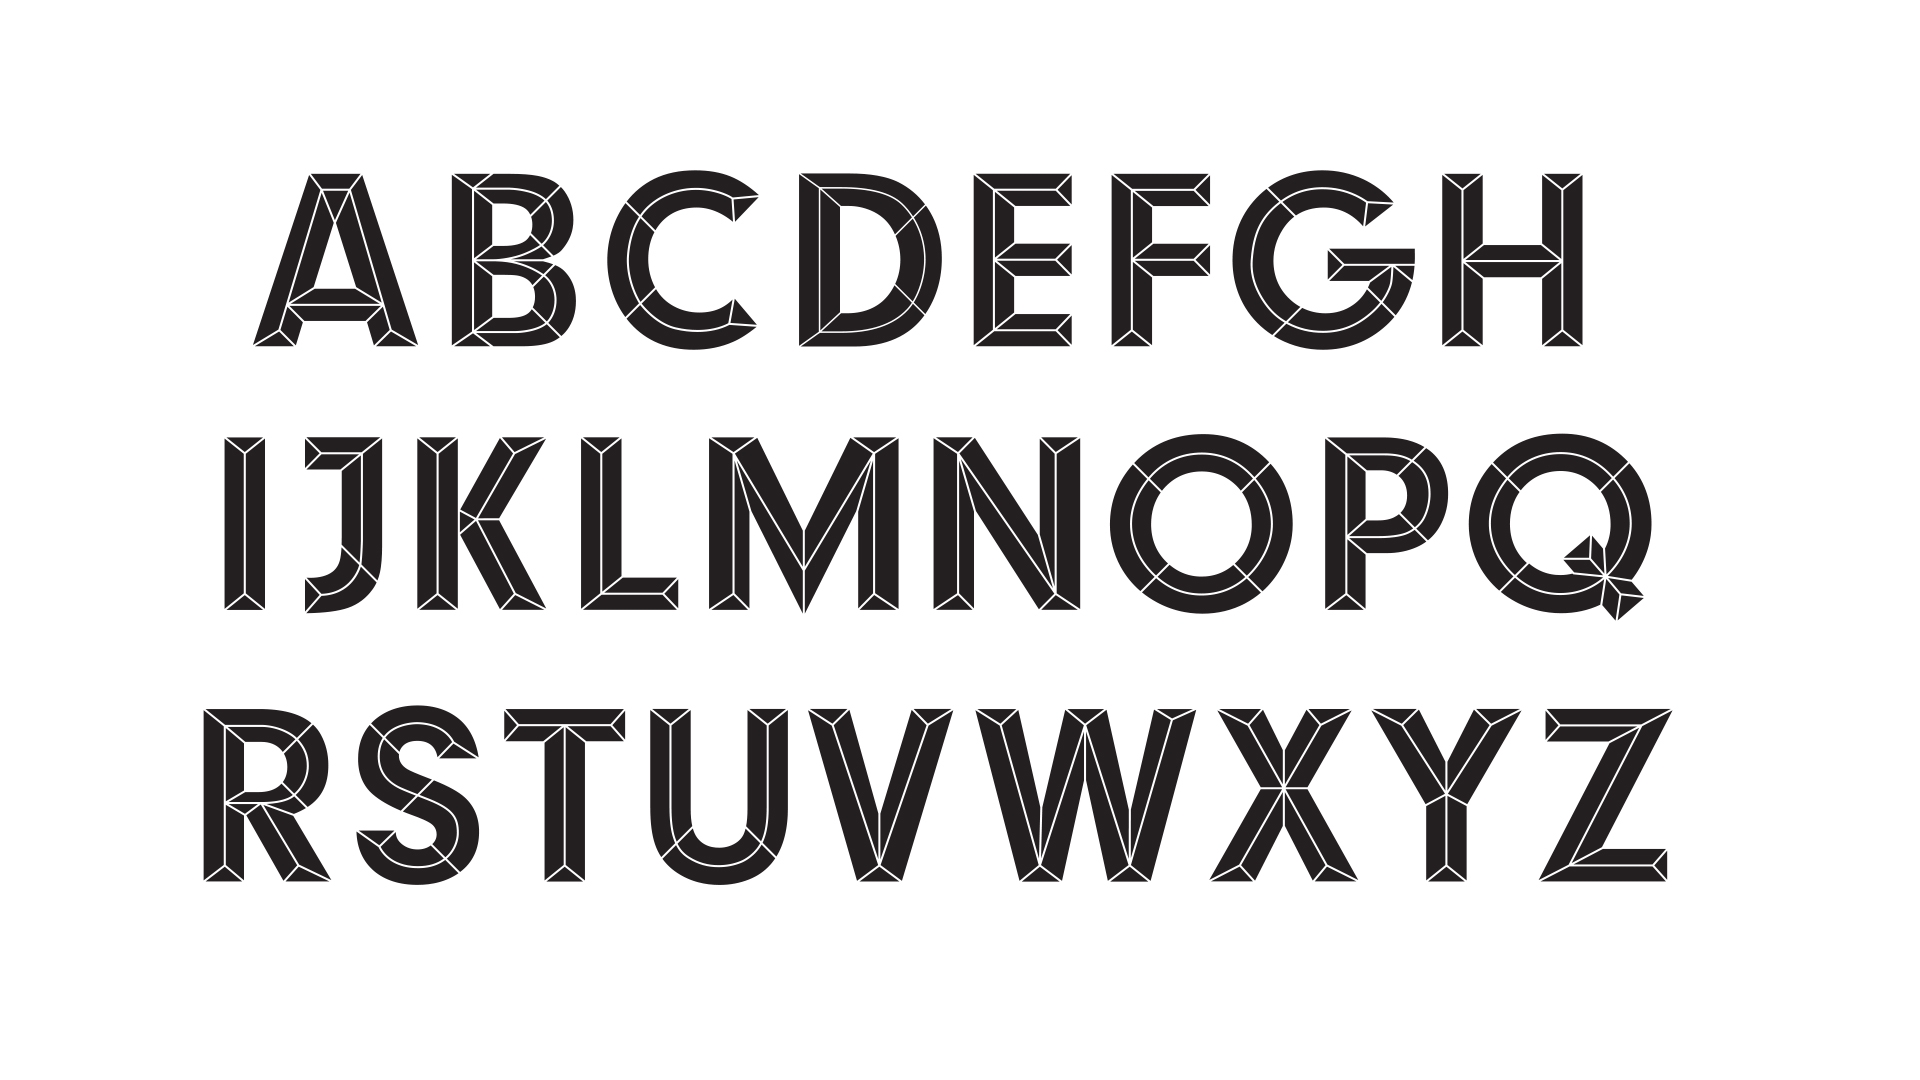 MarkArrowsmith-Indian-Typeface-Image-BW2